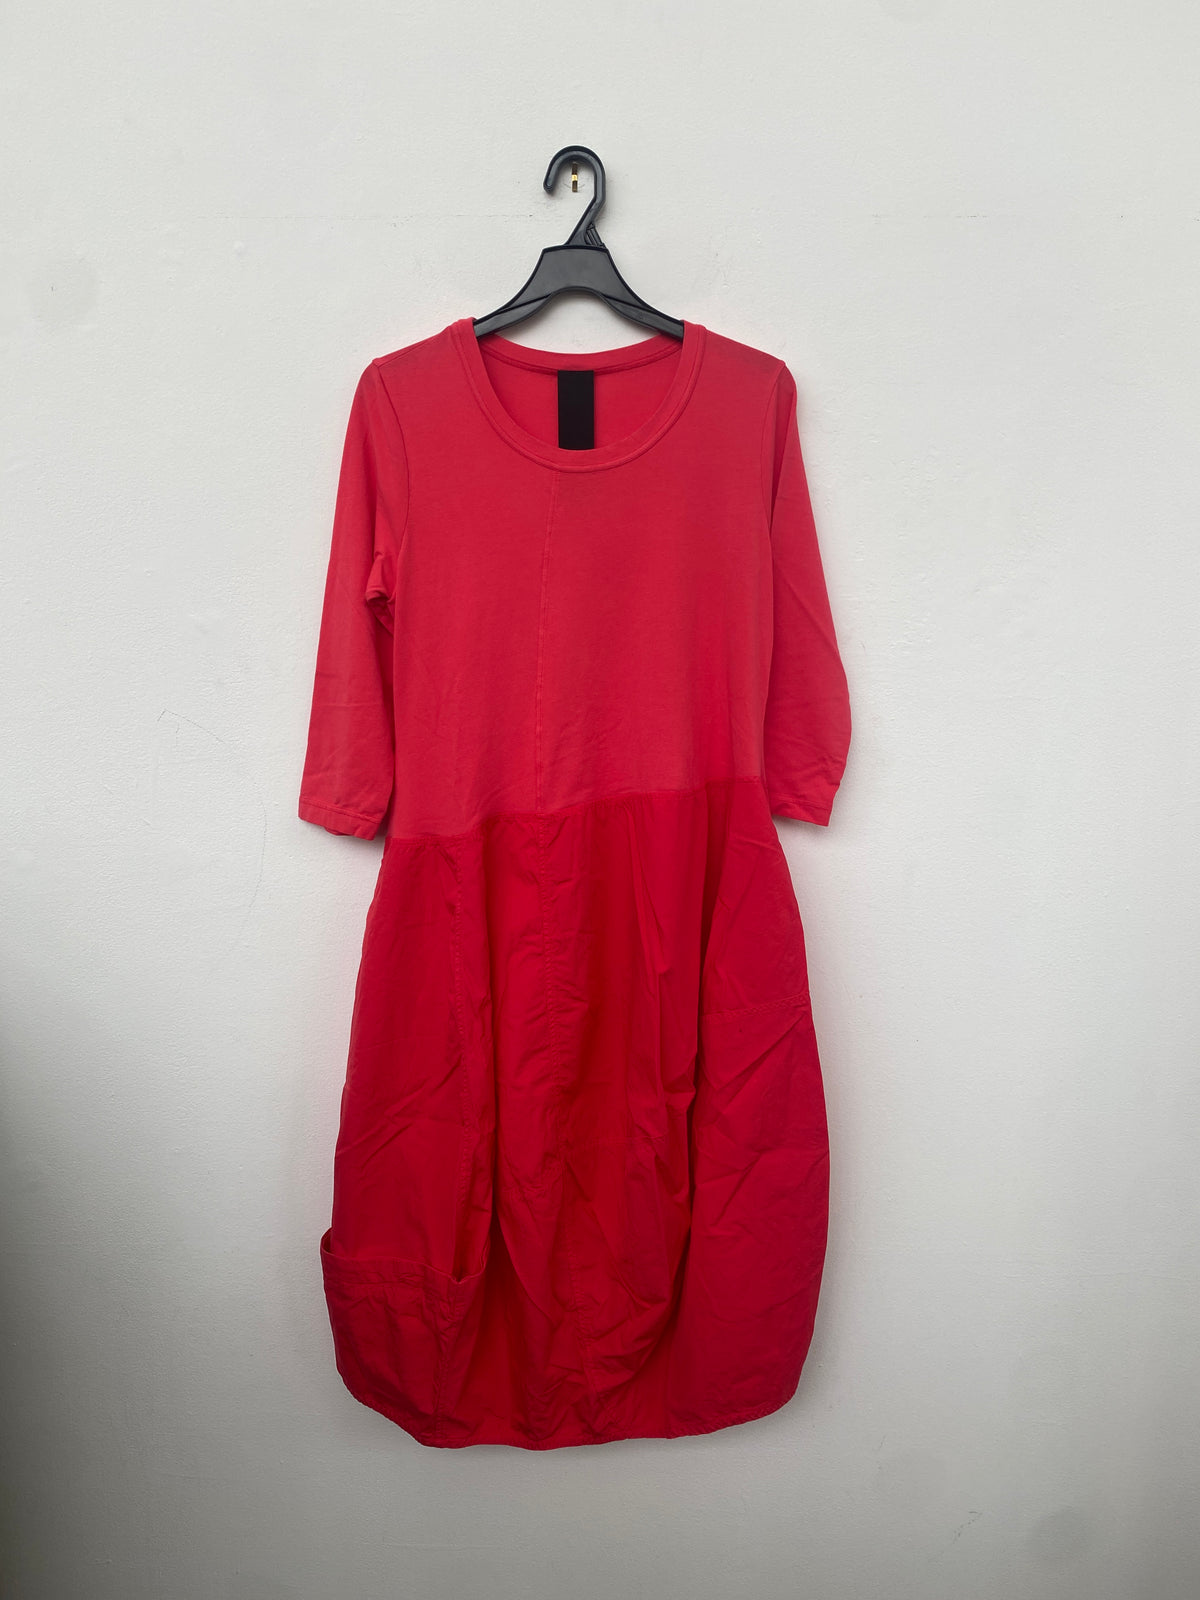 RBS23-3310907 Spliced 3/4 Sleeve Dress in Cherry